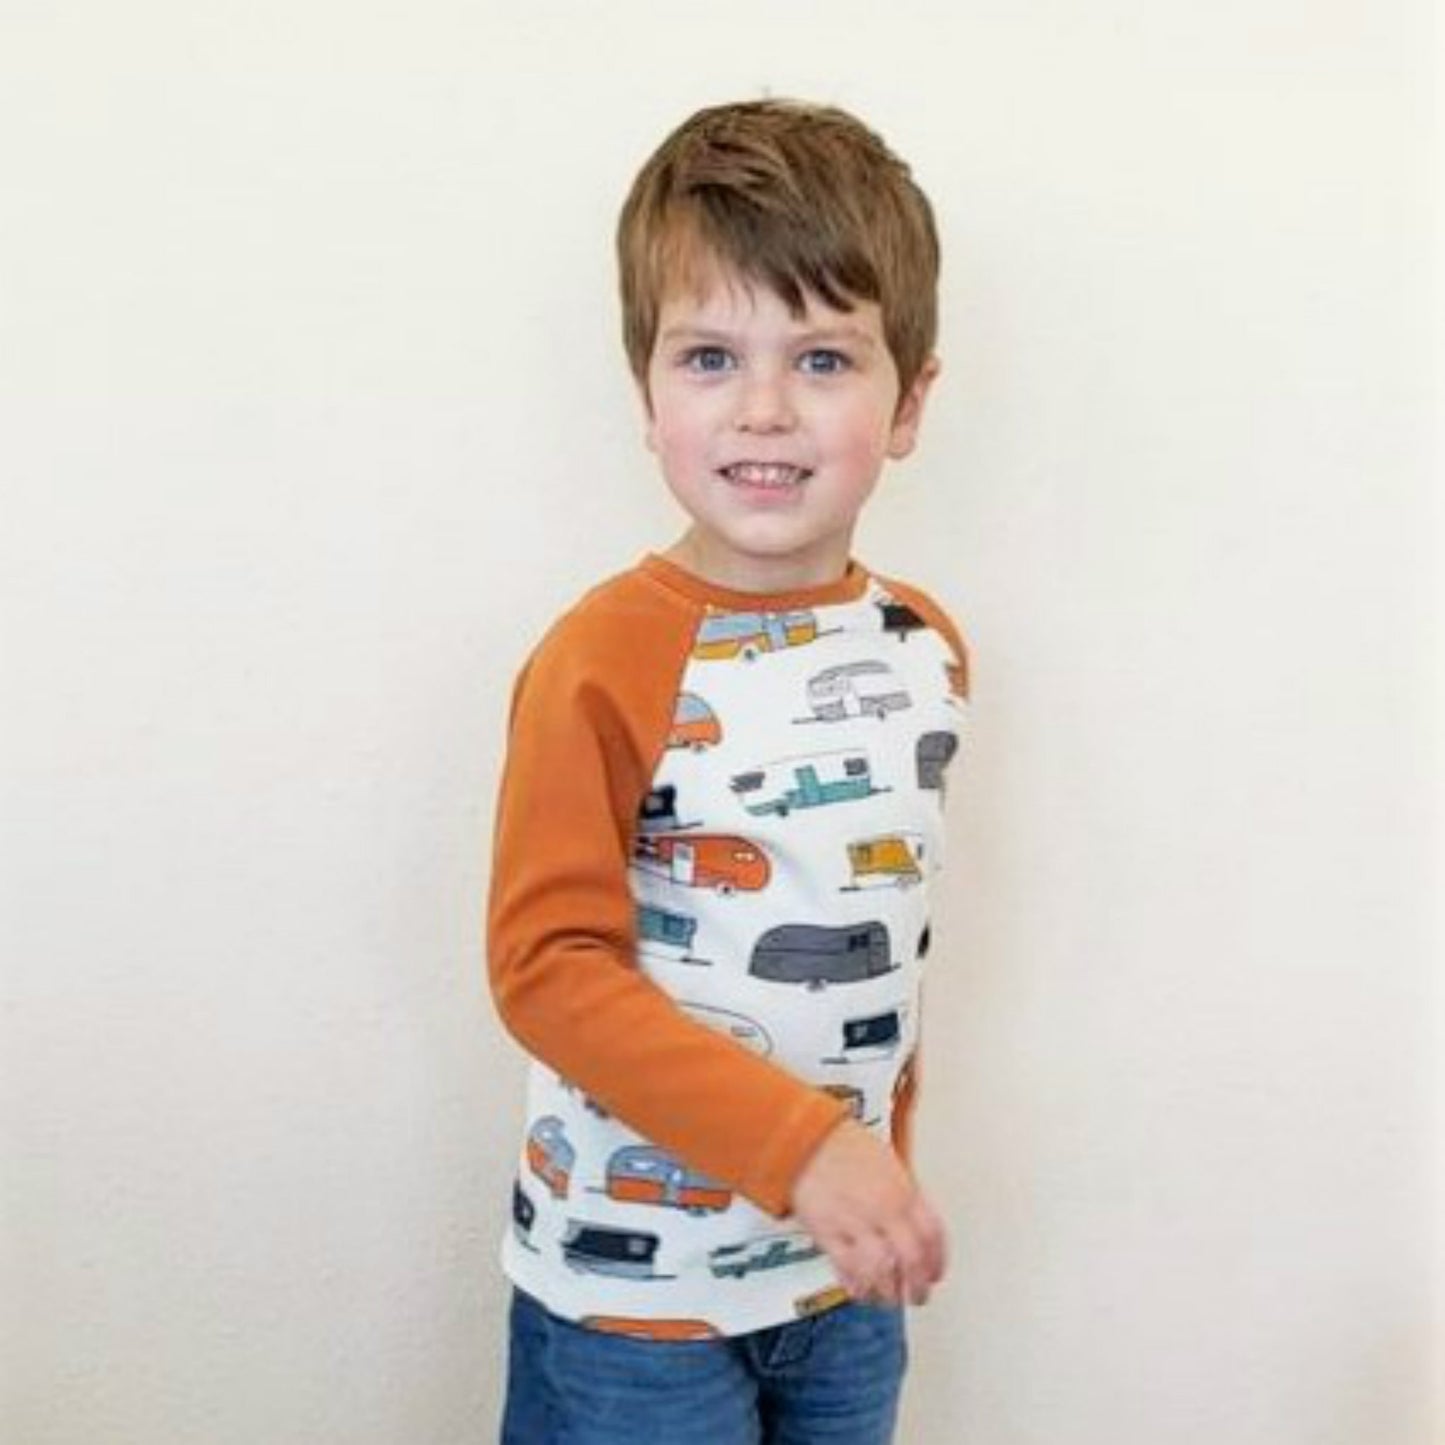 Organic Boy's Raglan Tee Shirt - Toddler Raglan Tee Shirt - Unisex Tee Shirt - Raglan Shirt